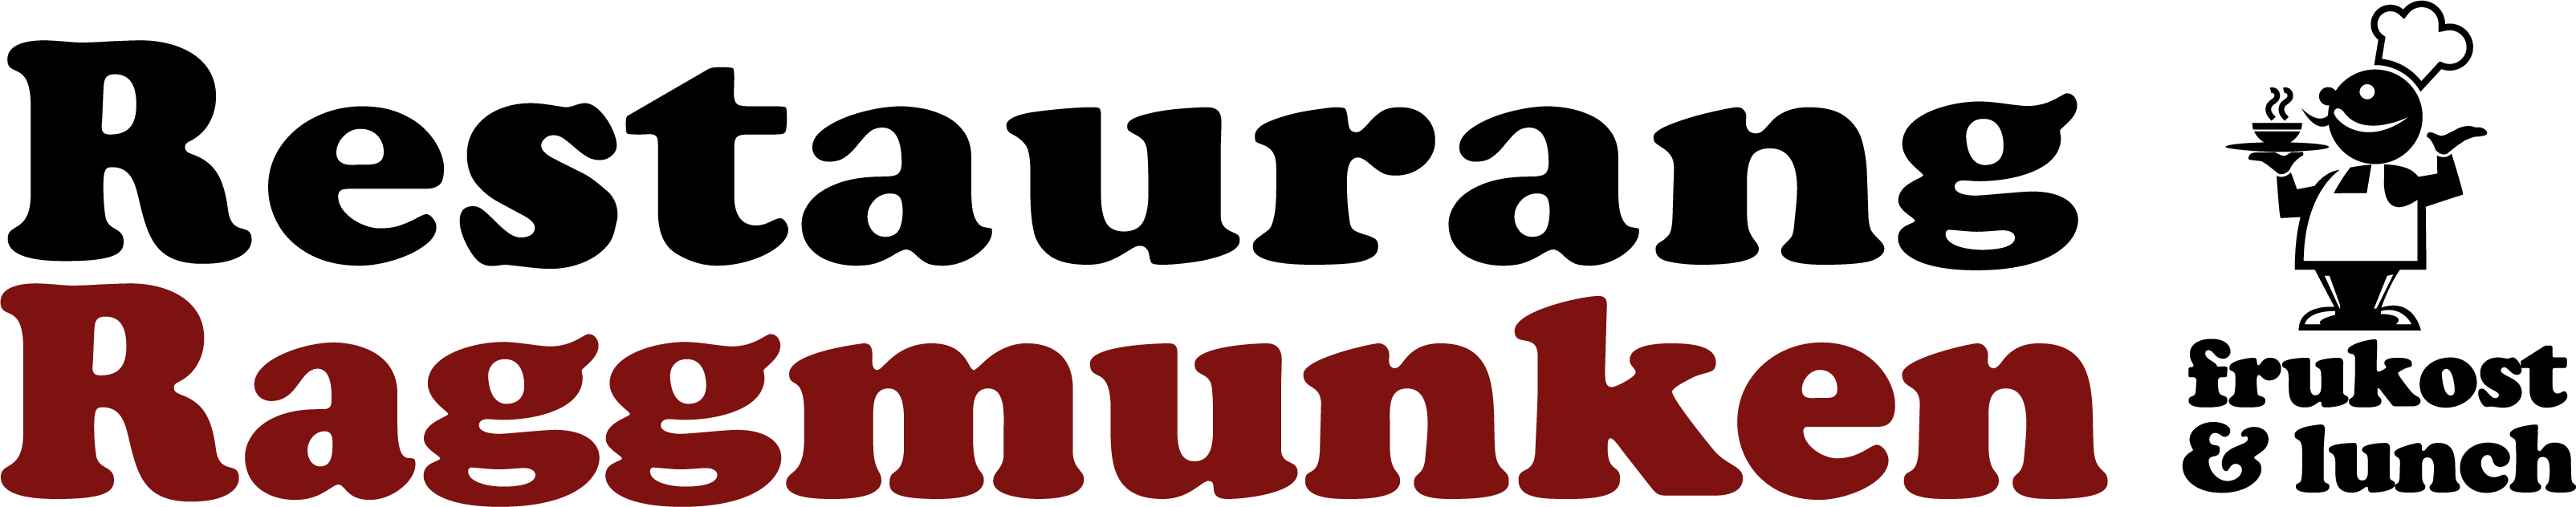 Restaurang Raggmunken logotyp